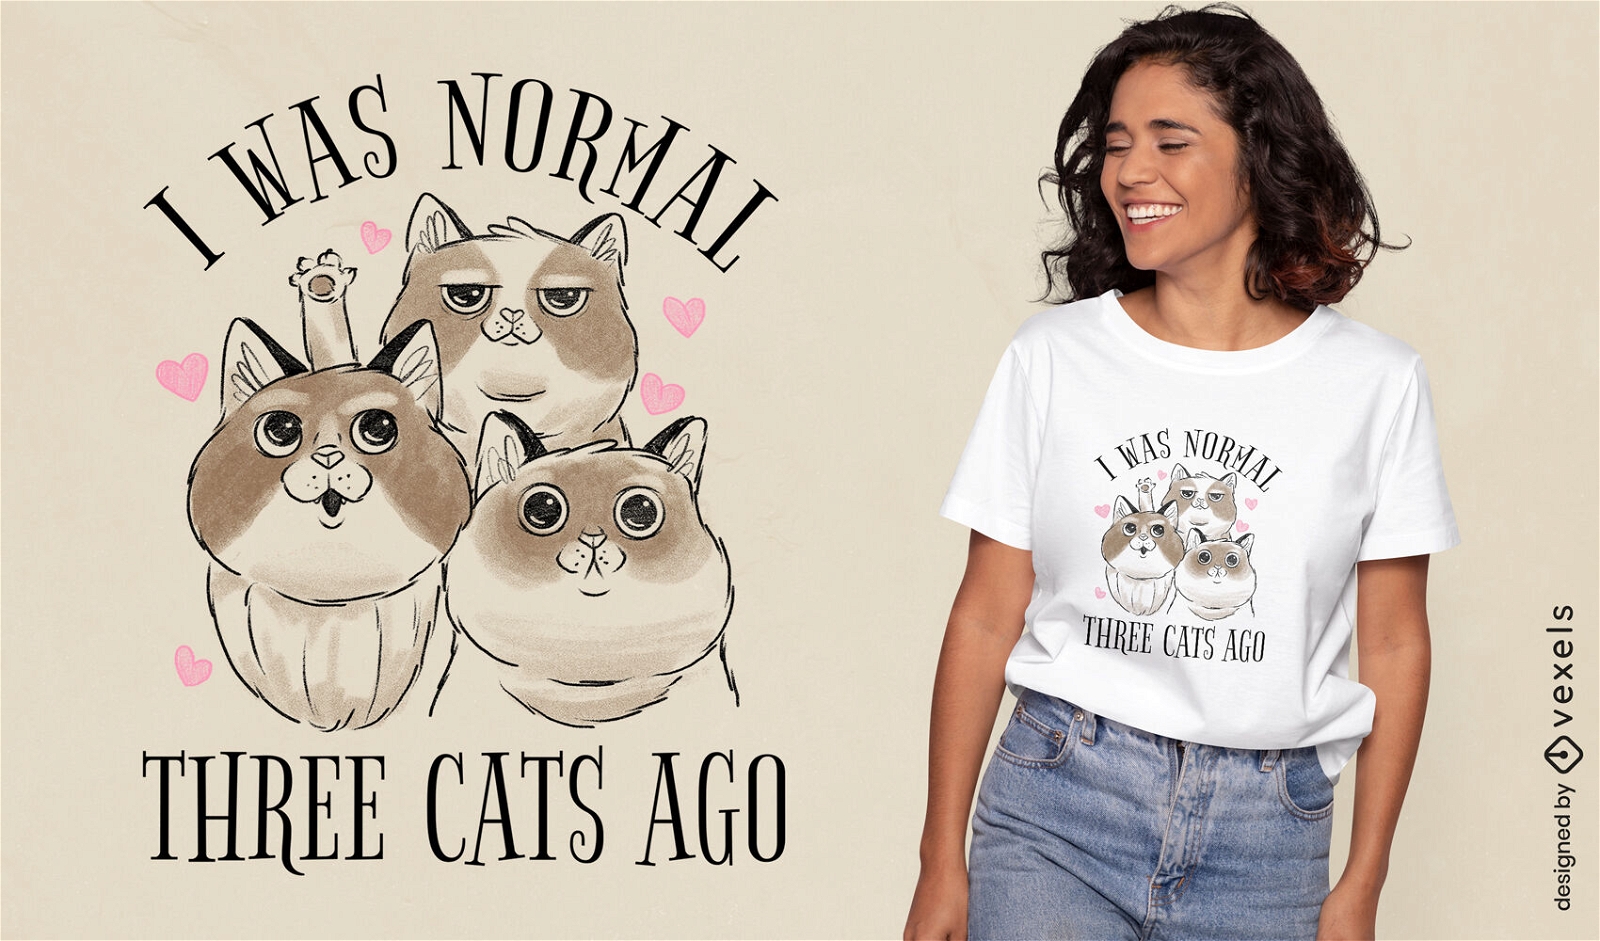 Normal antes de que los gatos cite el dise?o de la camiseta.